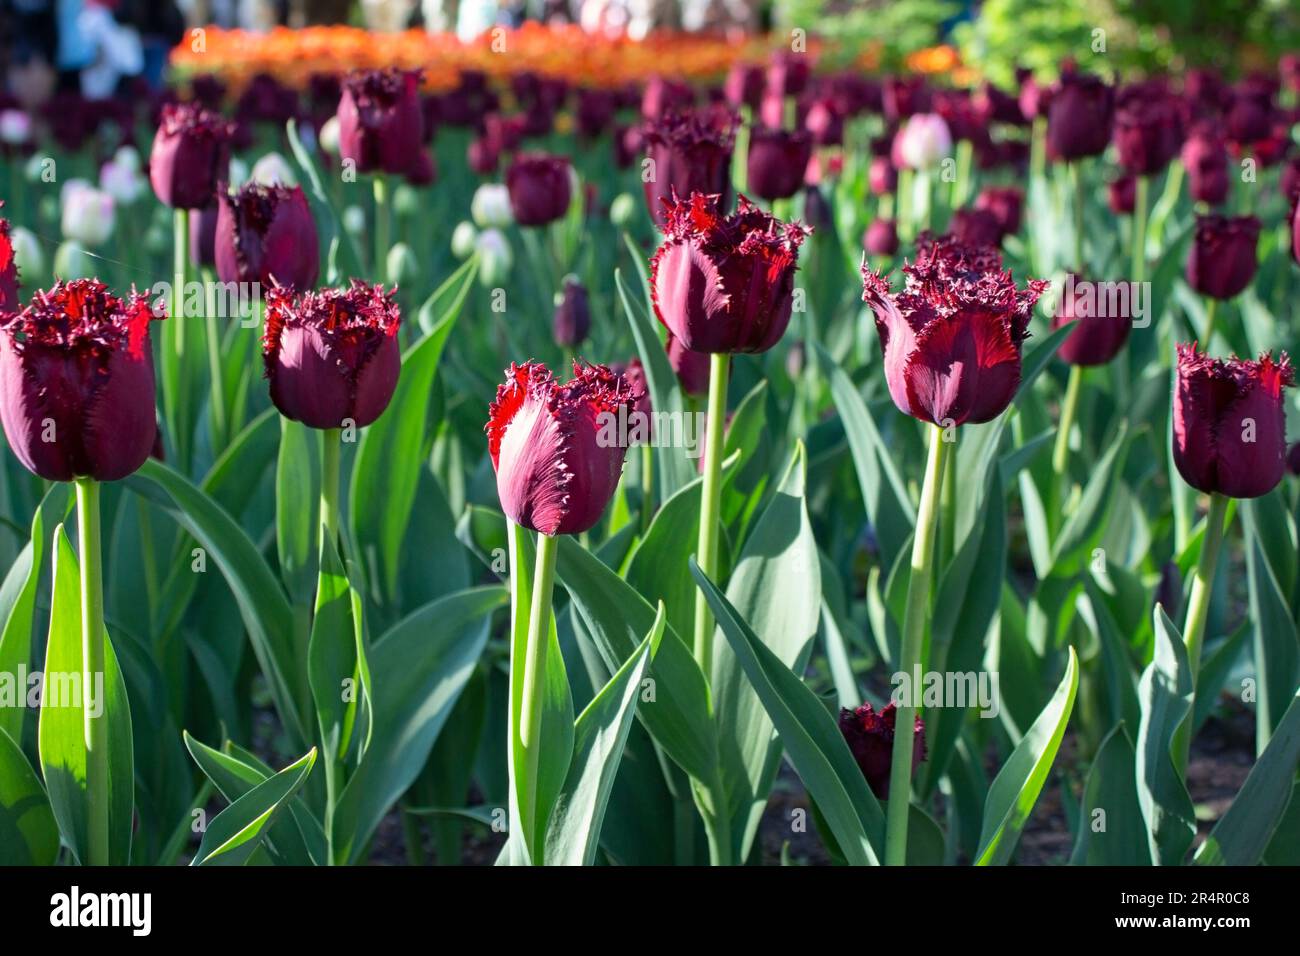 Inusuales tulipanes morados oscuros están creciendo en un lecho de flores en el parque. Tulipanes en flor de primavera. Variedad rara. Paisajismo. Foto de stock